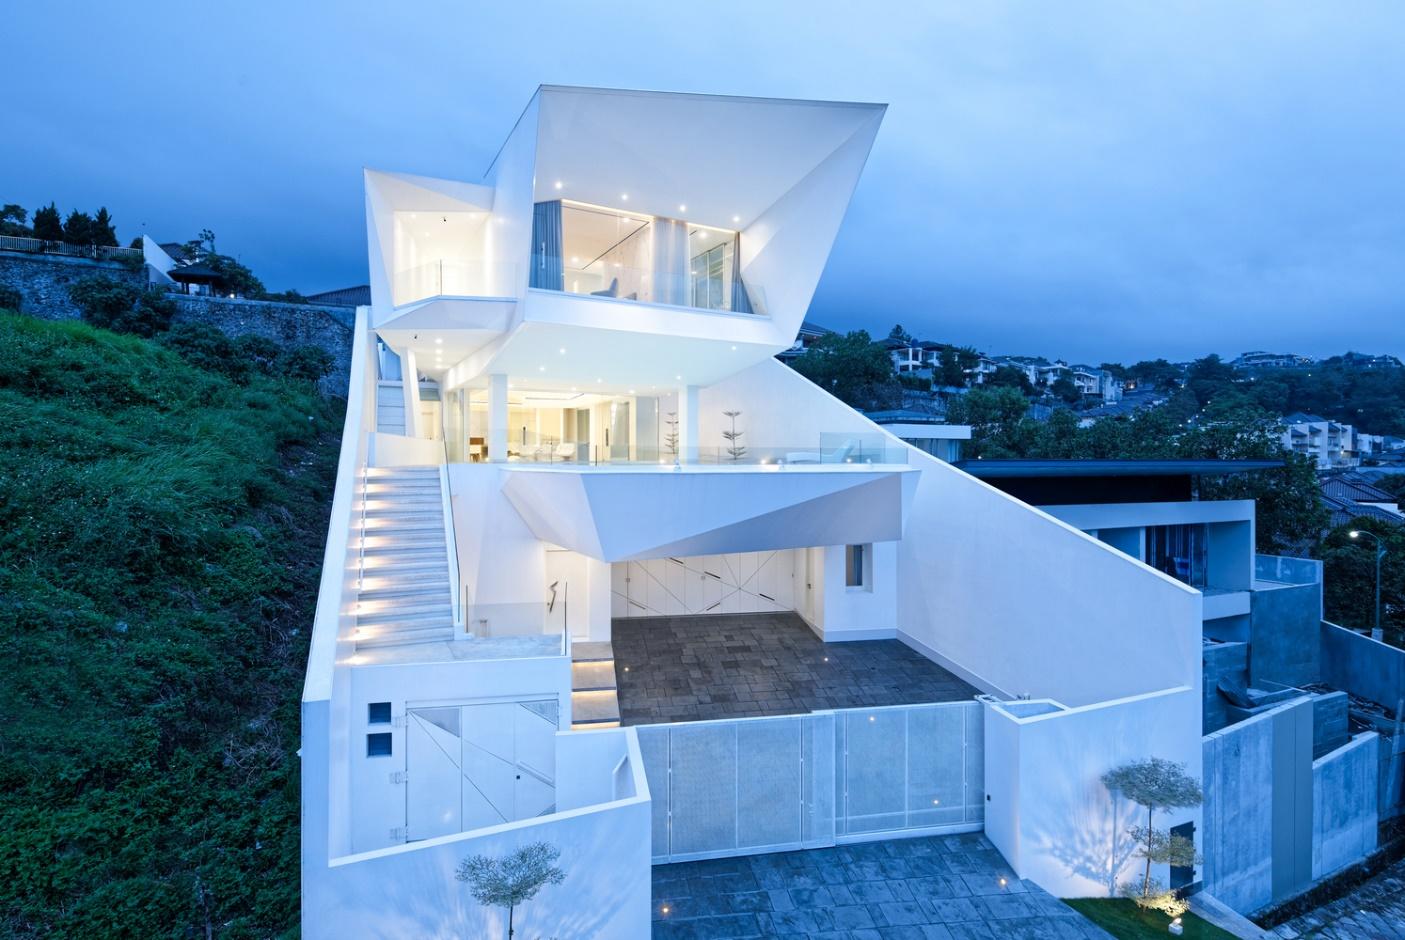 Massives schönes Haus im weißen Stil